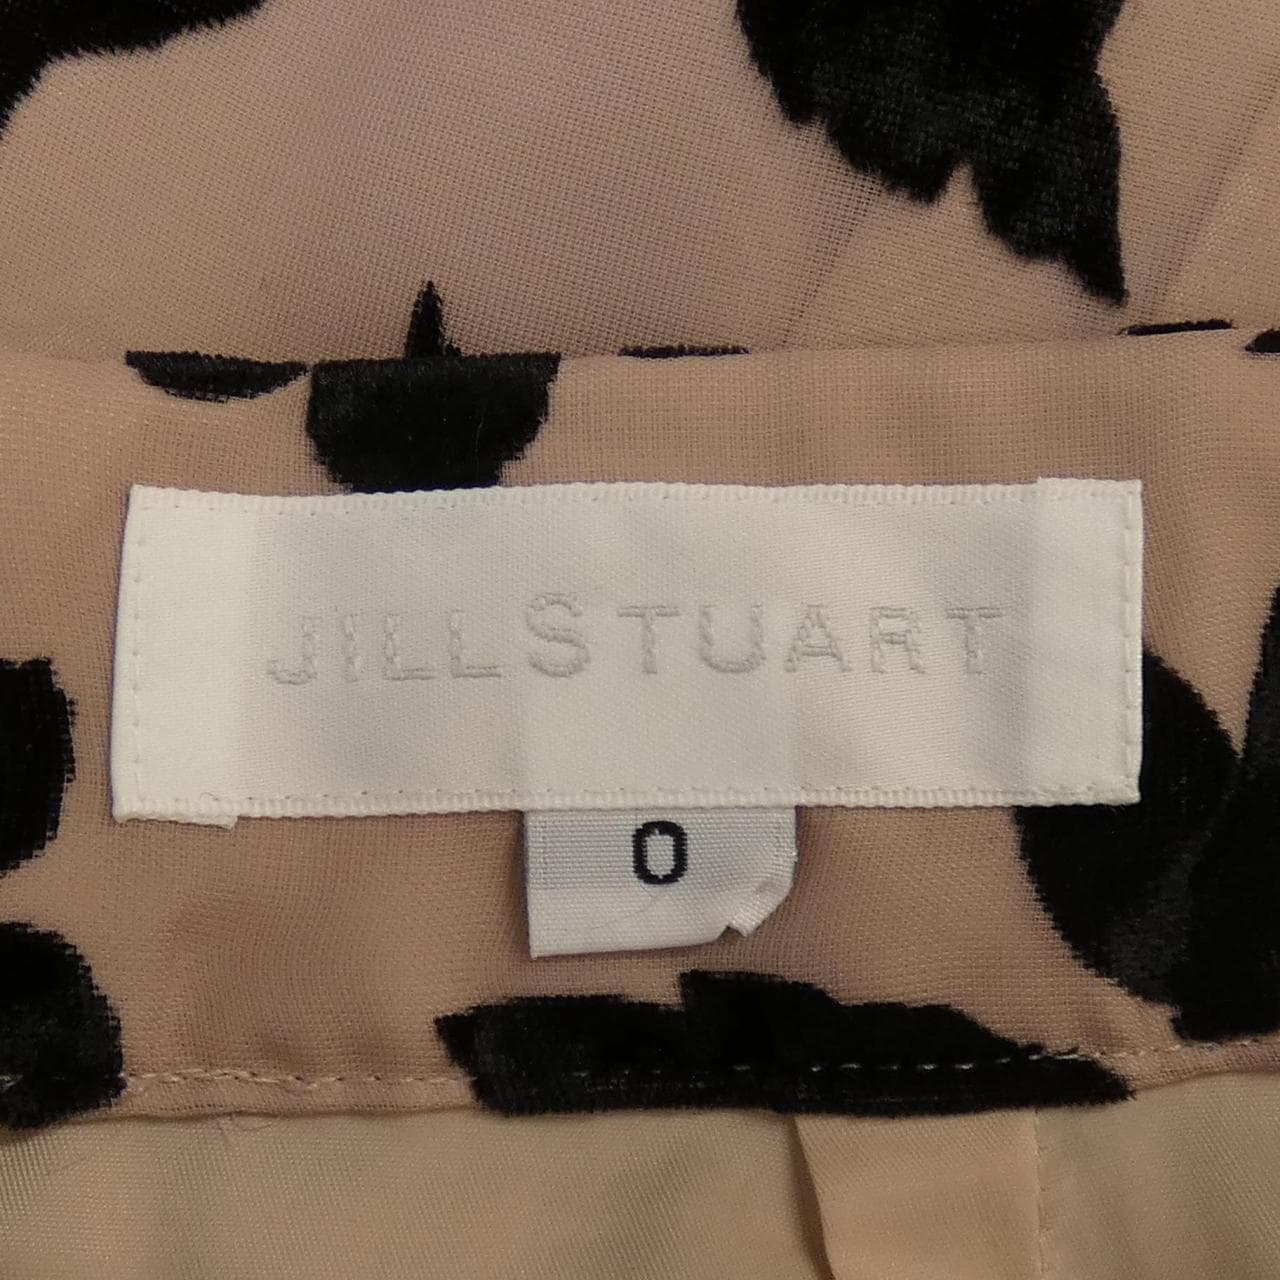 ジルスチュアート JILL STUART スカート